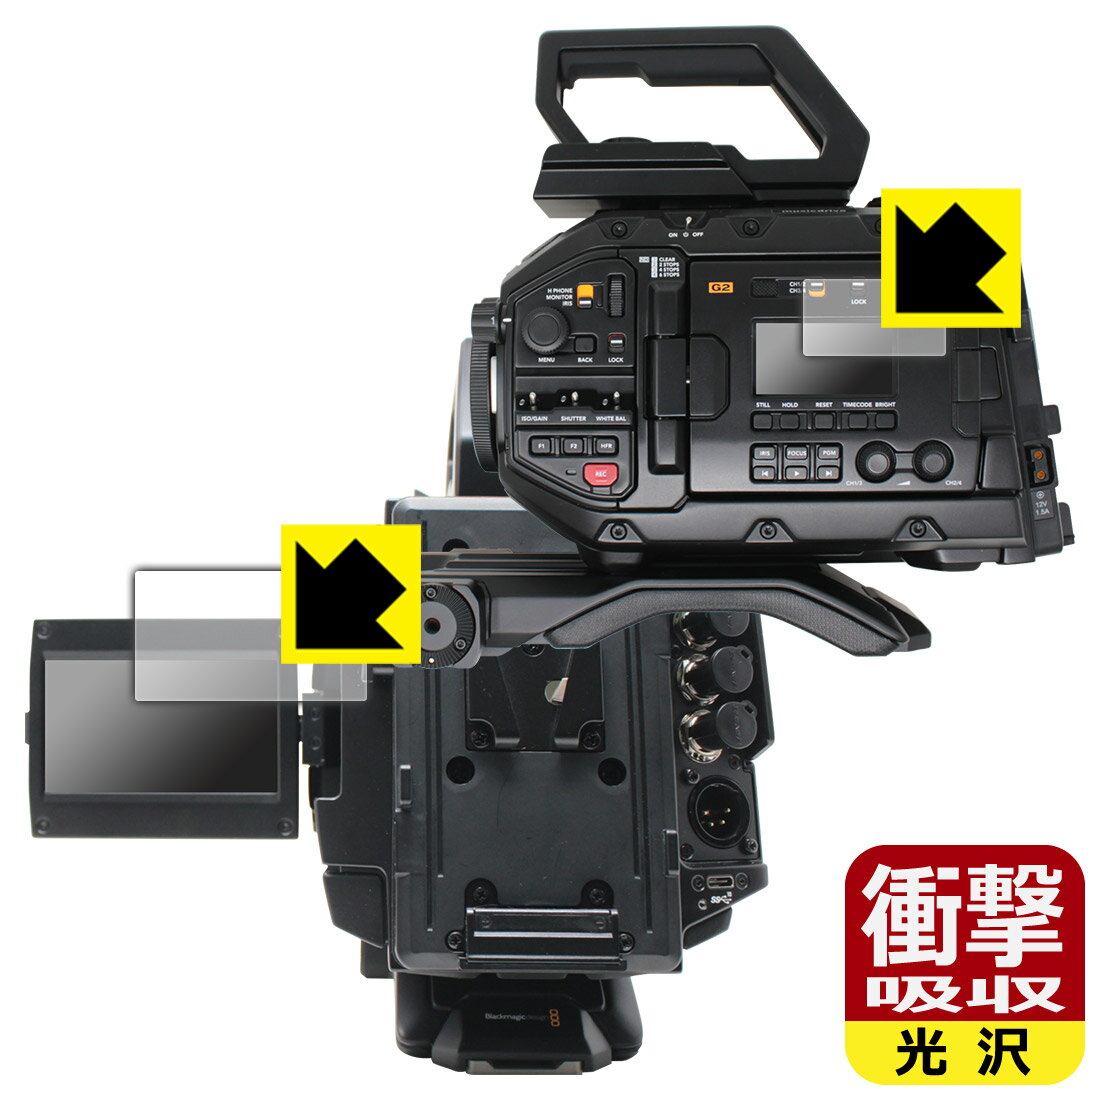 衝撃吸収【光沢】保護フィルム Blackmagic URSA Broadcast G2 (LCDステータス表示画面用・開閉式LCDスクリーン用) 日本製 自社製造直販